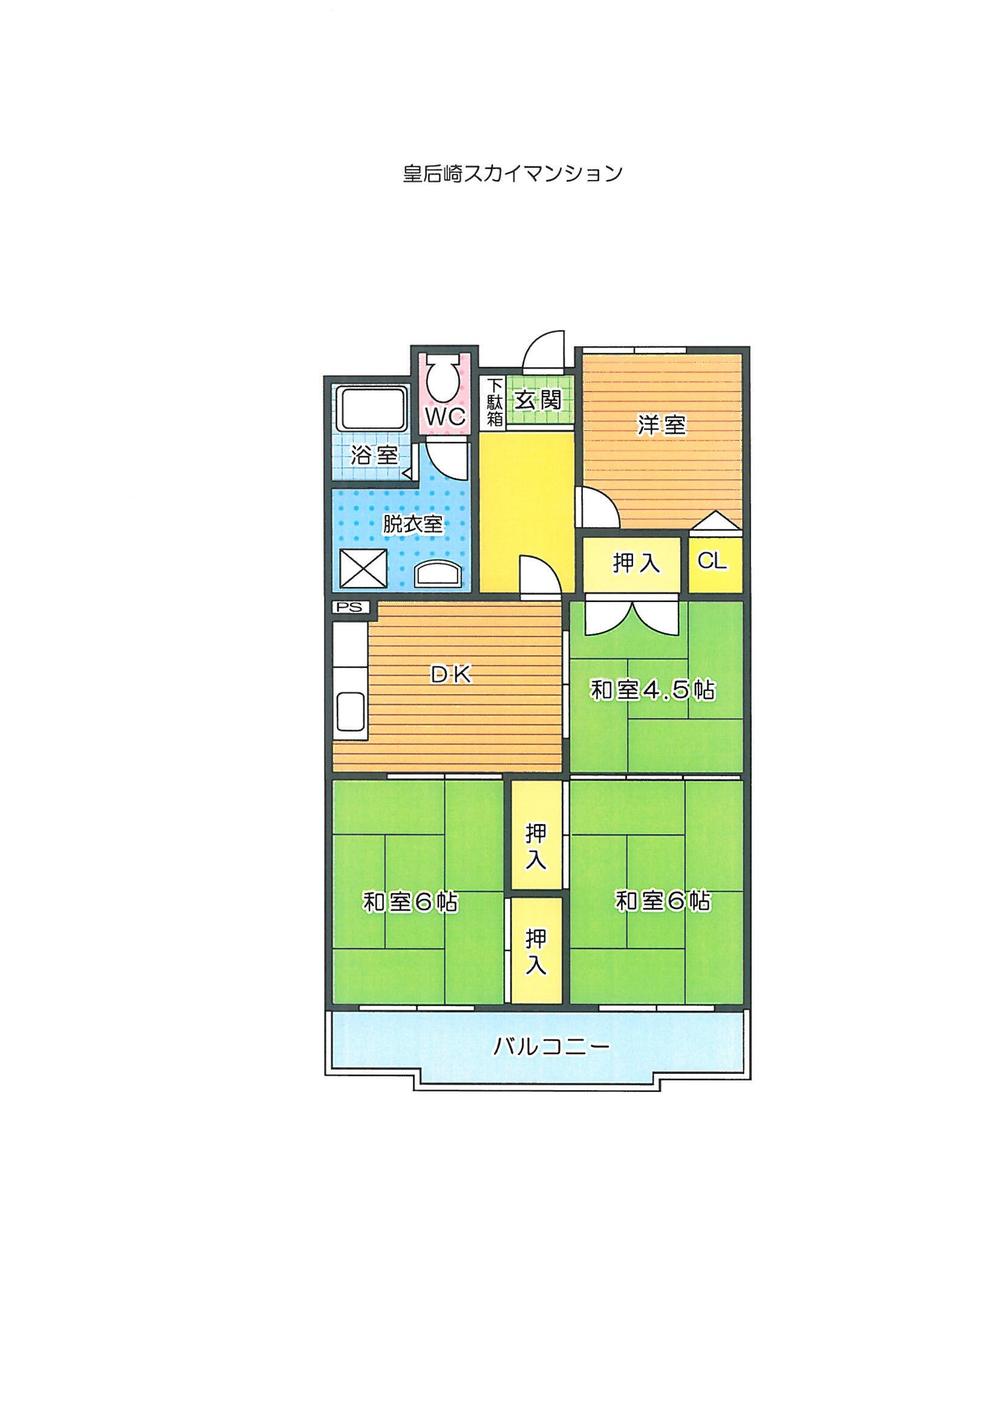 Floor plan. 4DK, Price 6.2 million yen, Occupied area 60.93 sq m